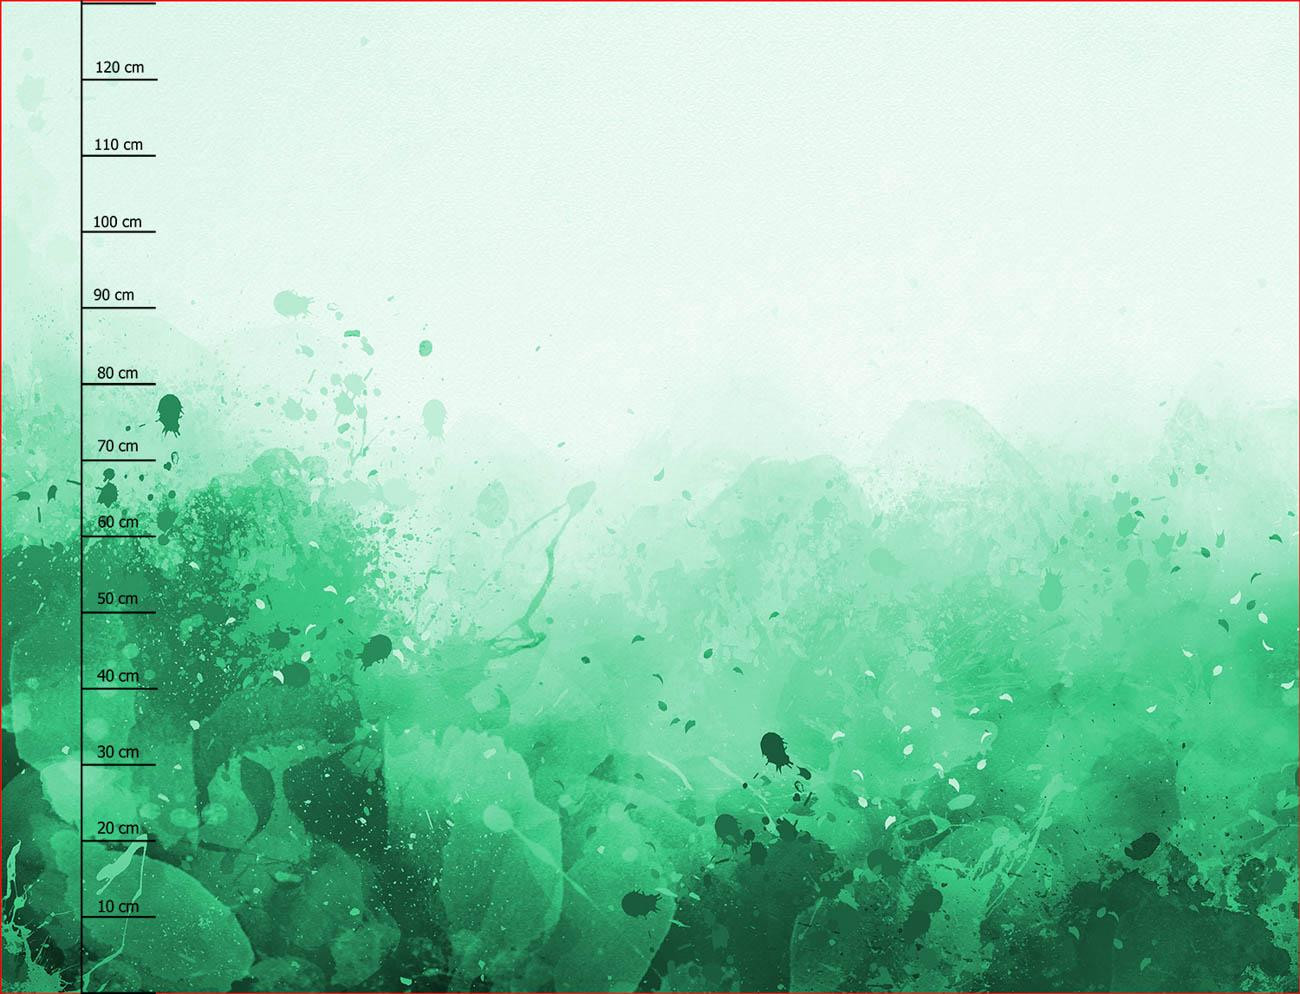 KLEKSY (zielony) - panel sukienkowy